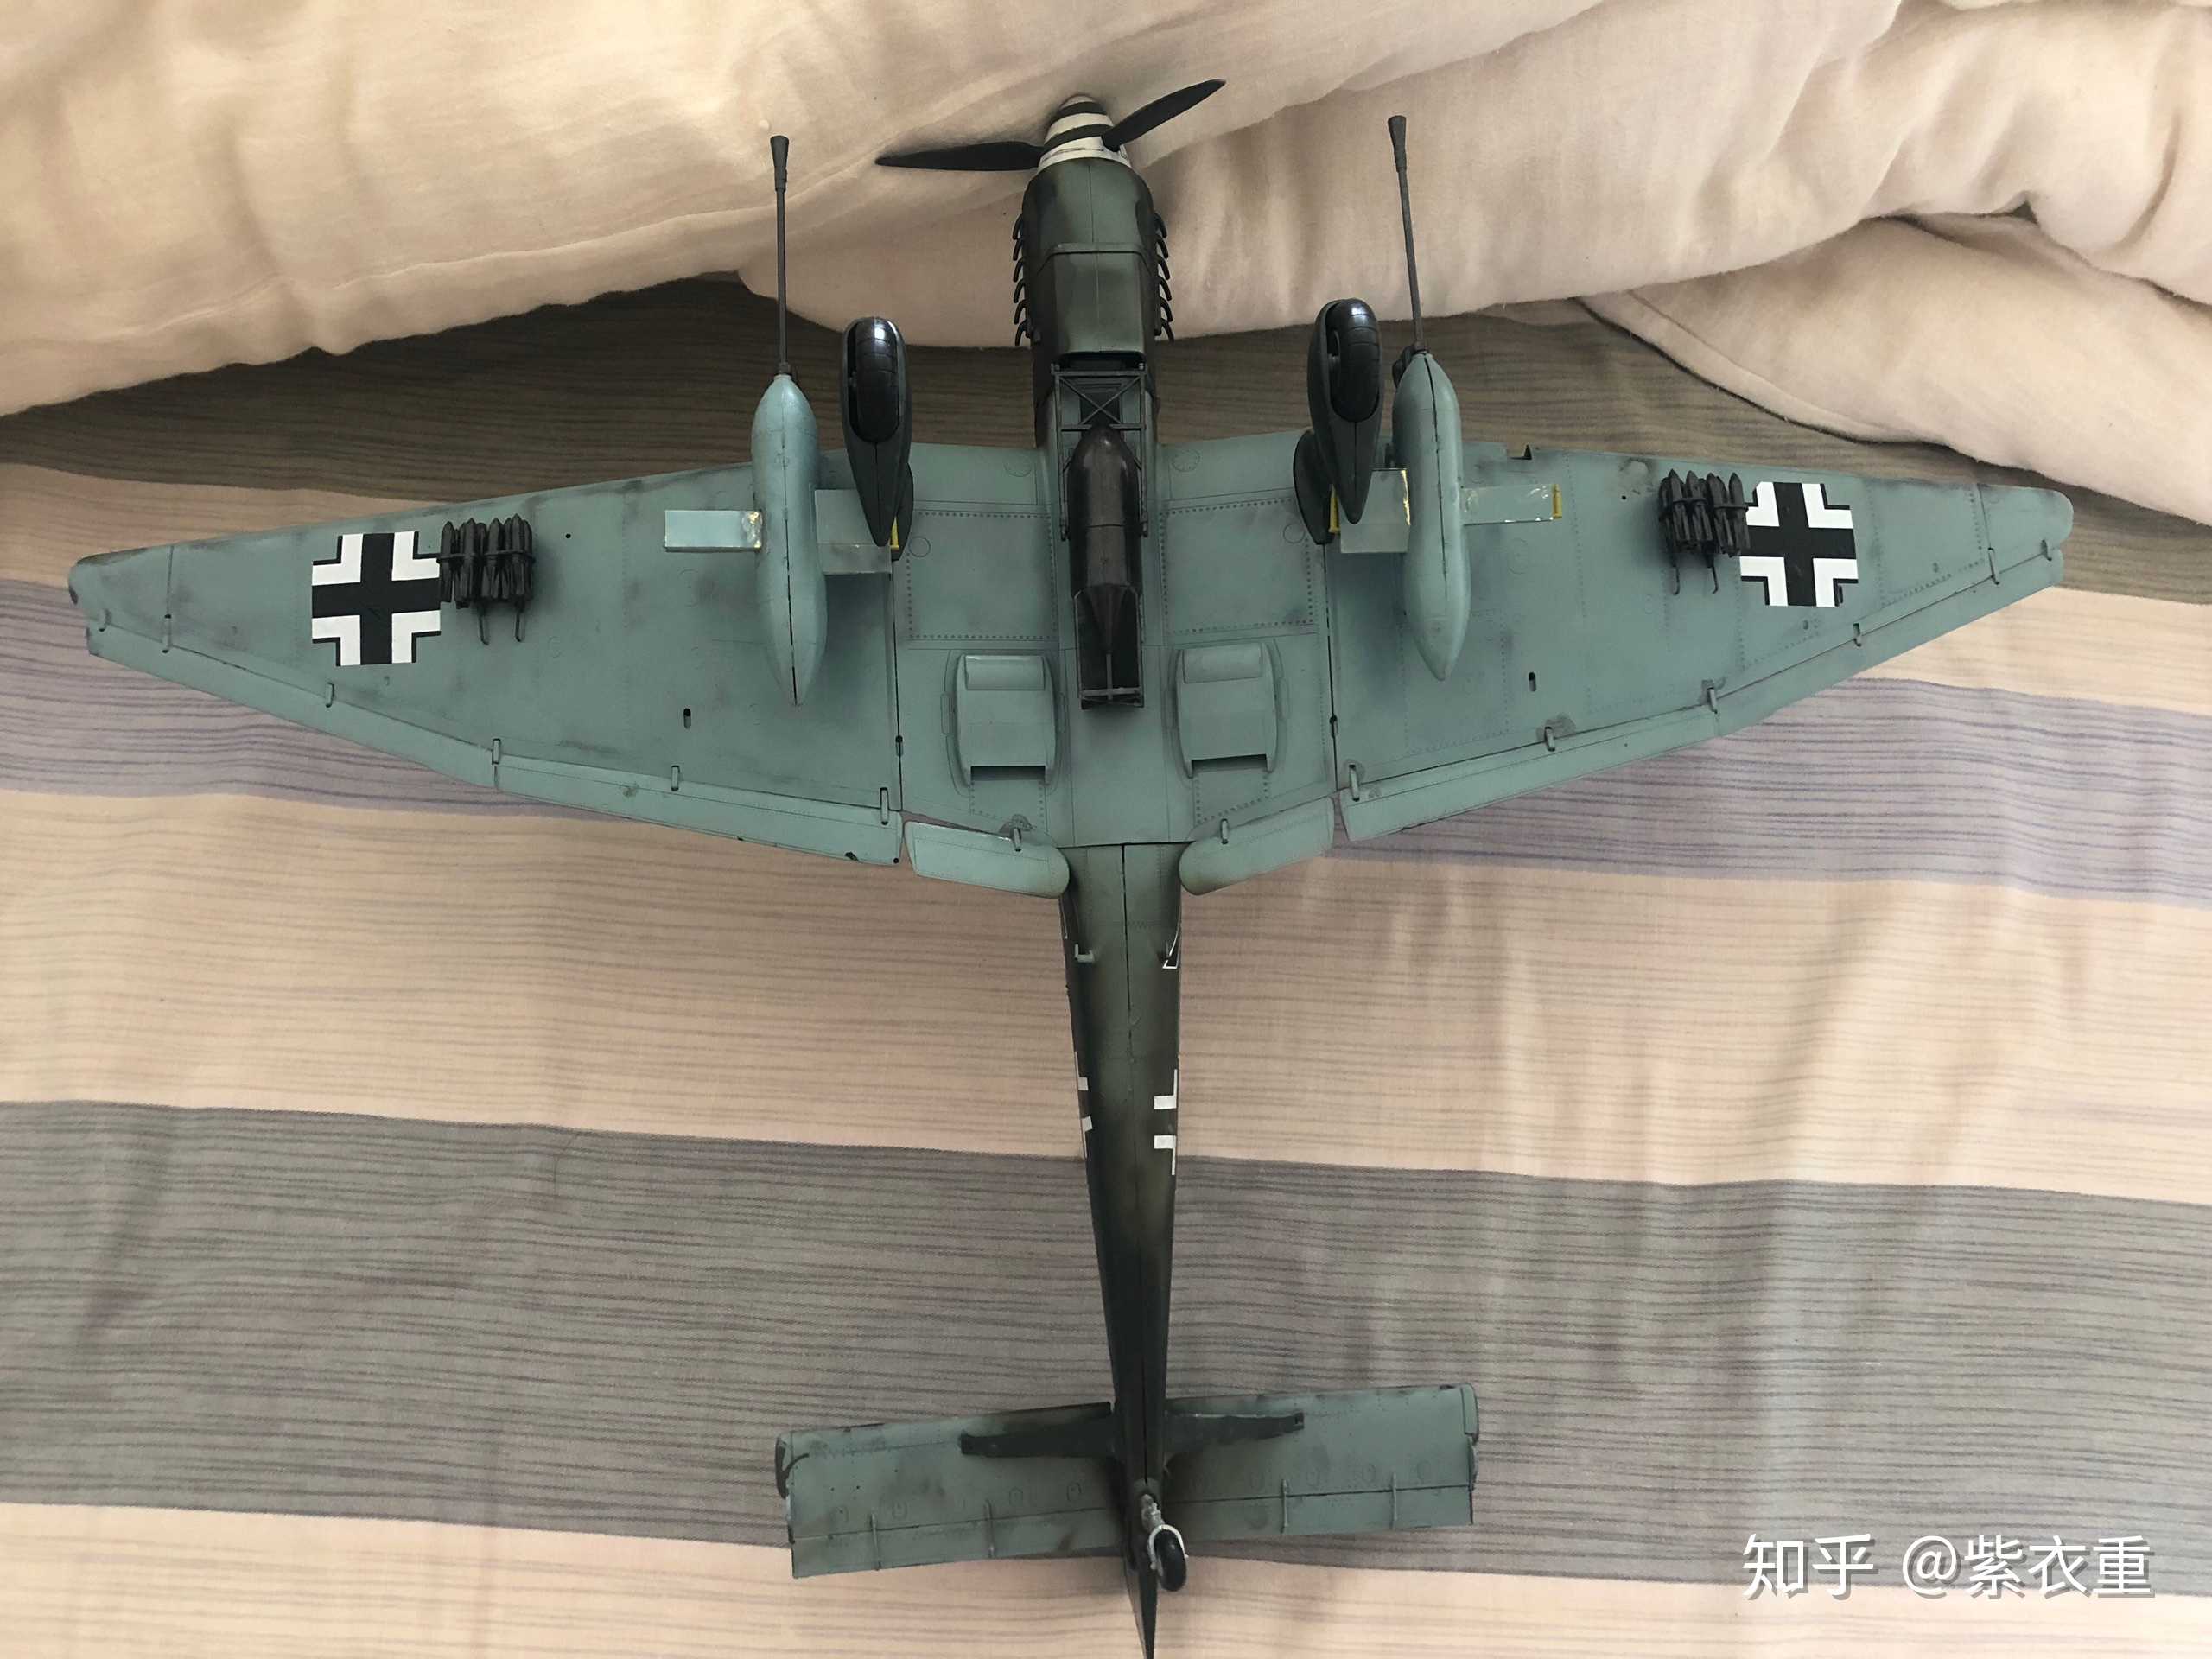 初入模型坑,1:32斯图卡ju87g2俯冲轰炸机